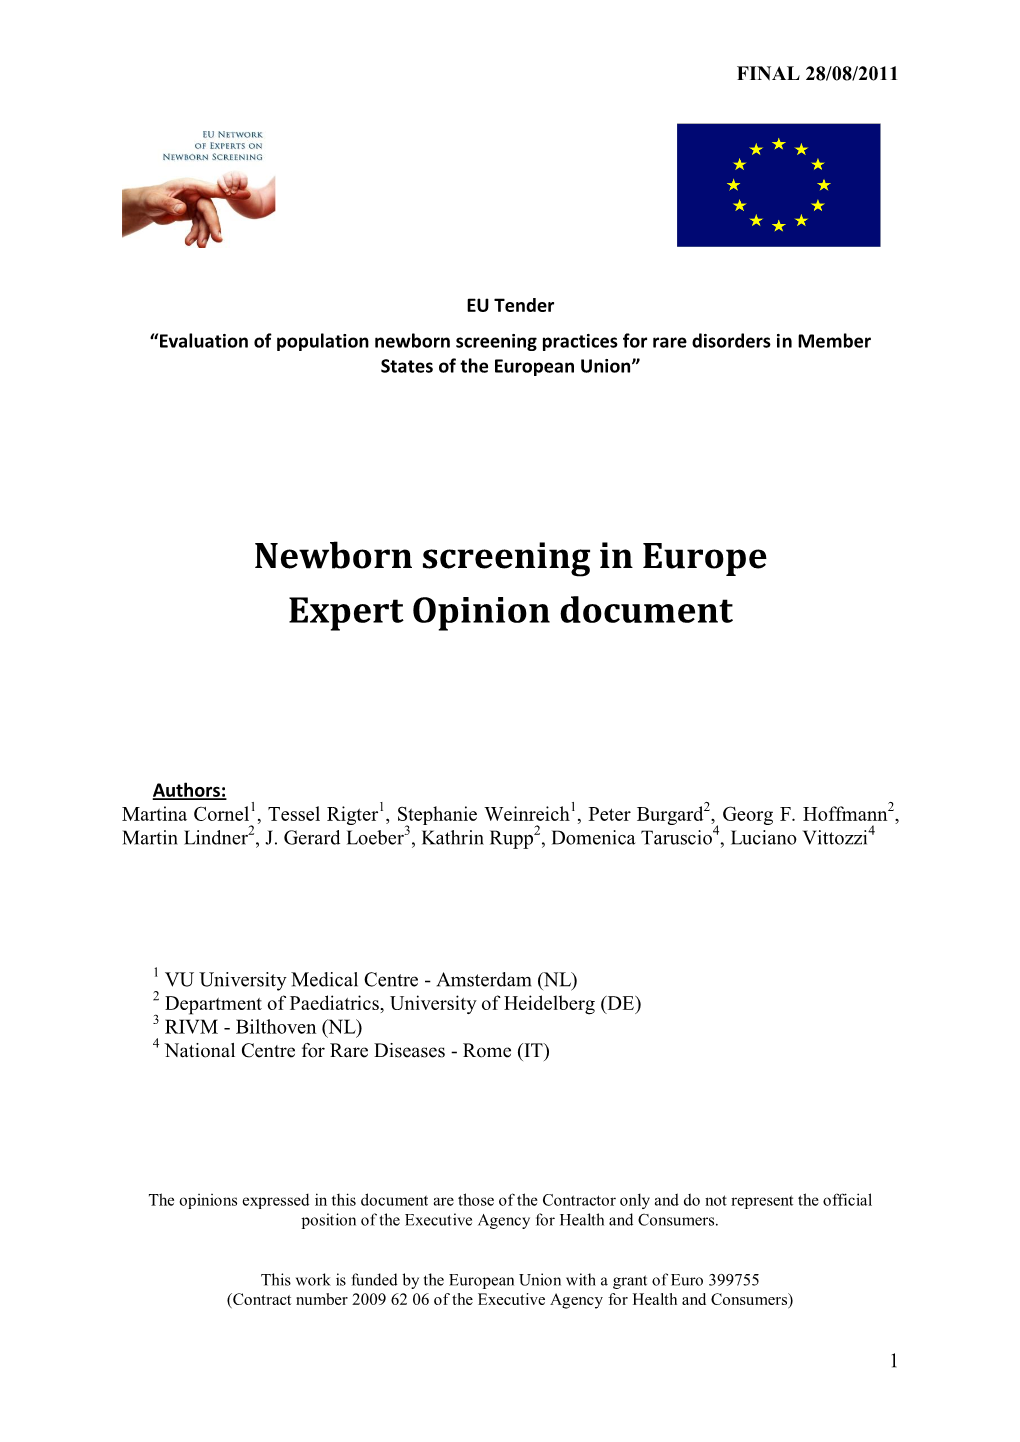 Newborn Screening in Europe Expert Opinion Document